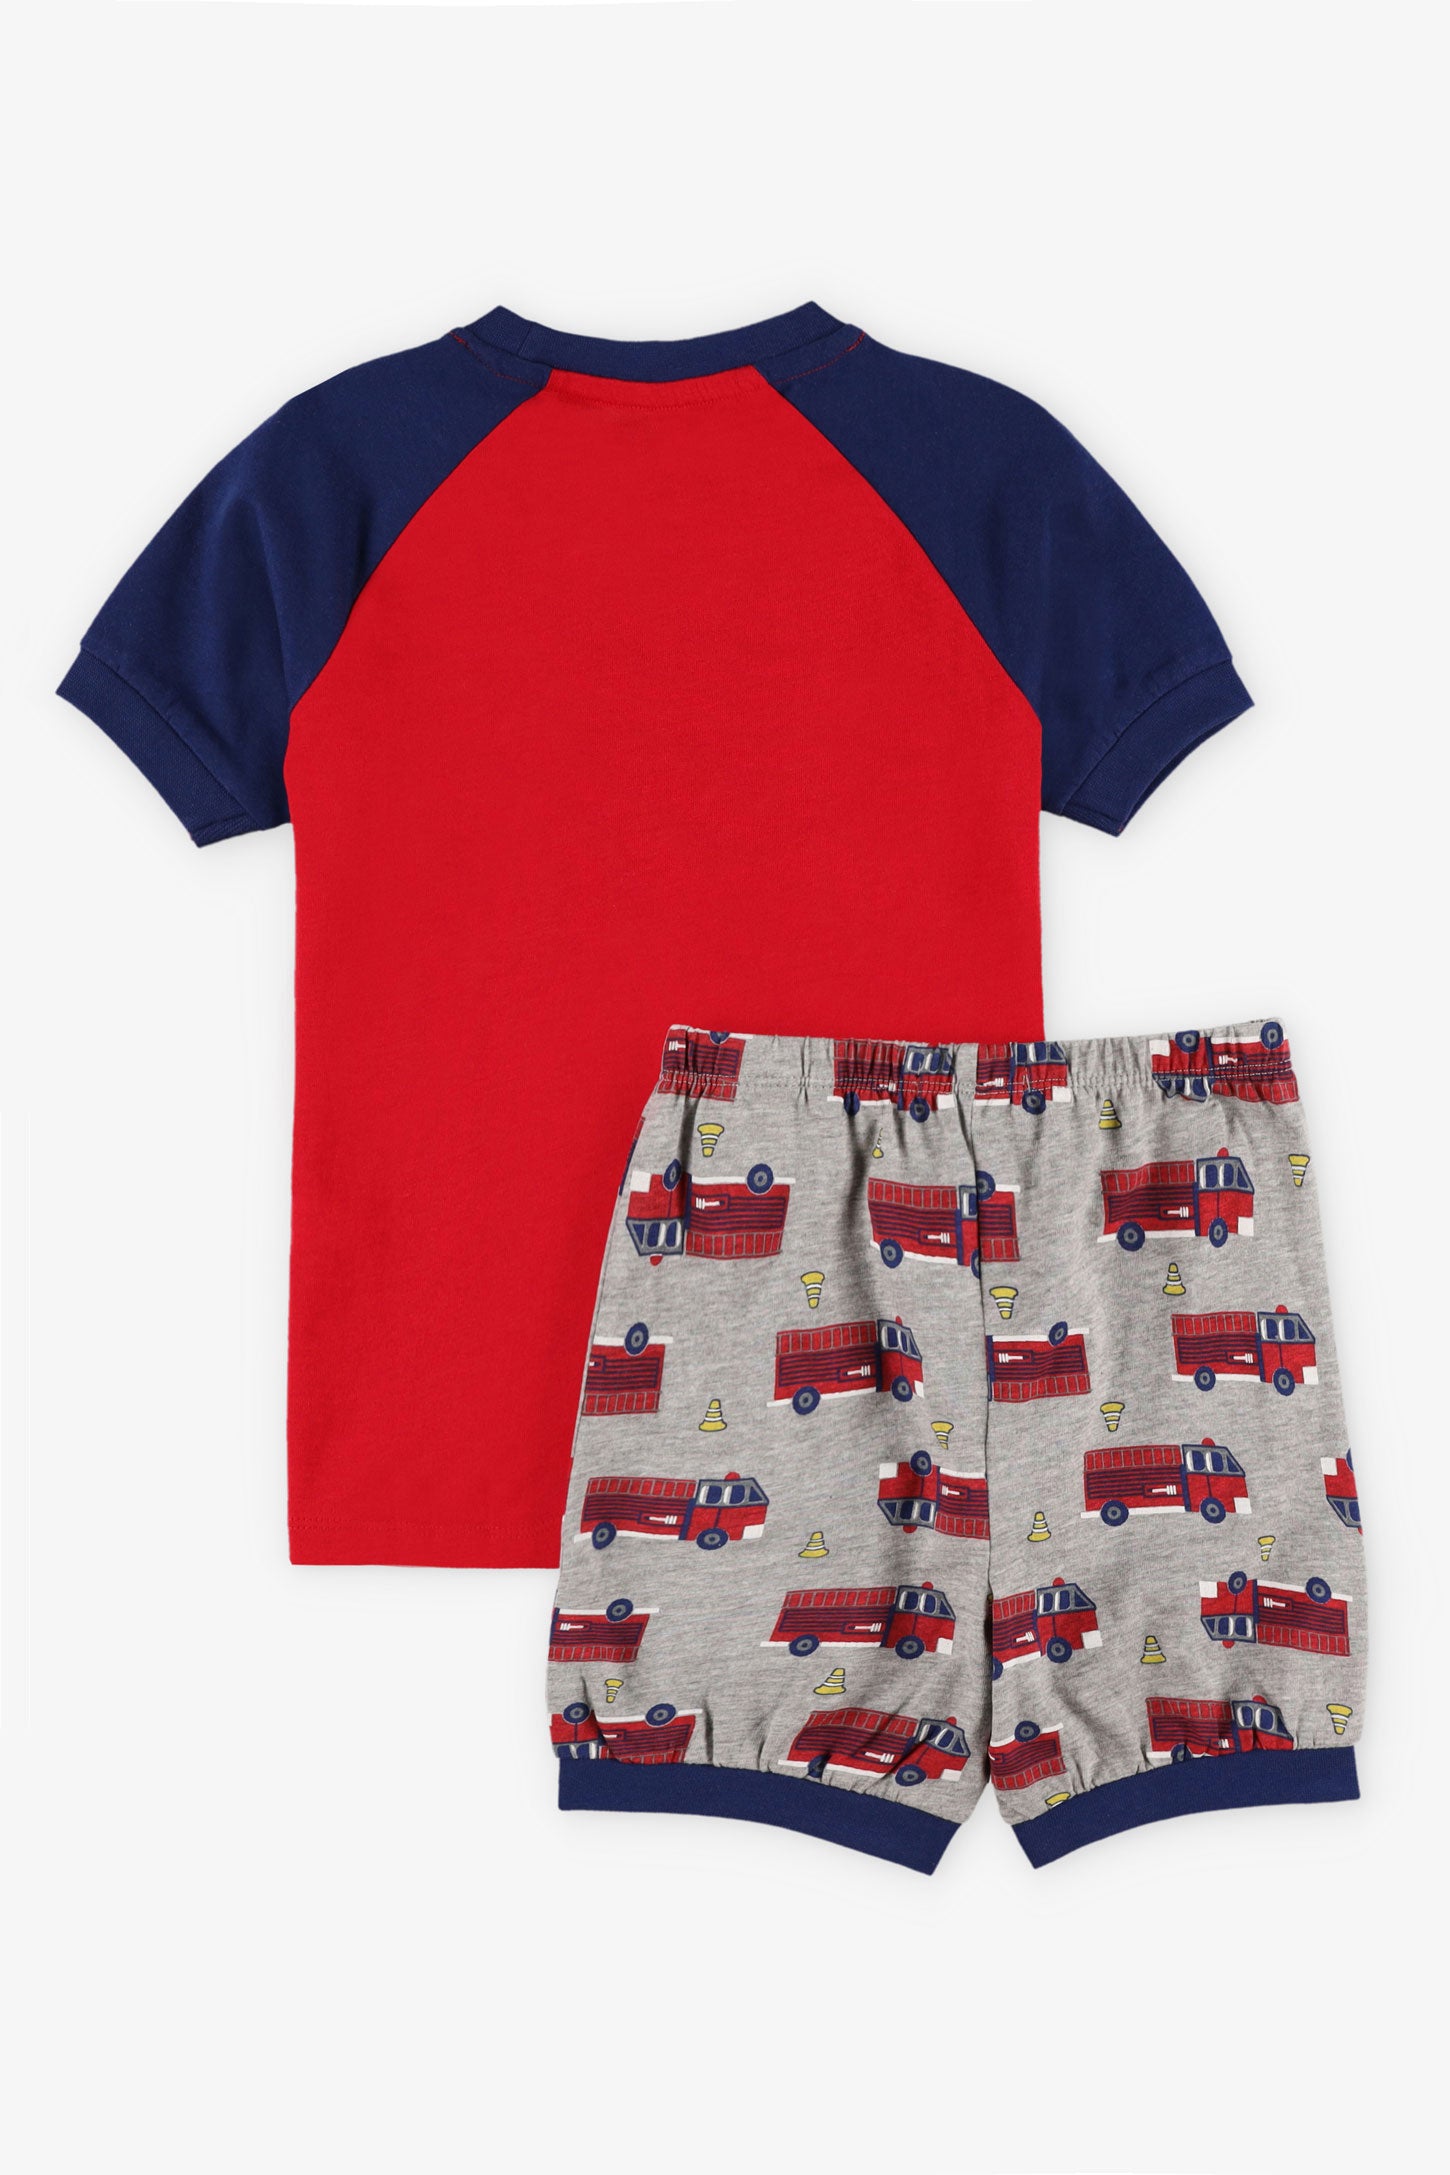 Pyjama 2-pièces imprimé en coton, 2/35$ - Enfant garçon && ROUGE